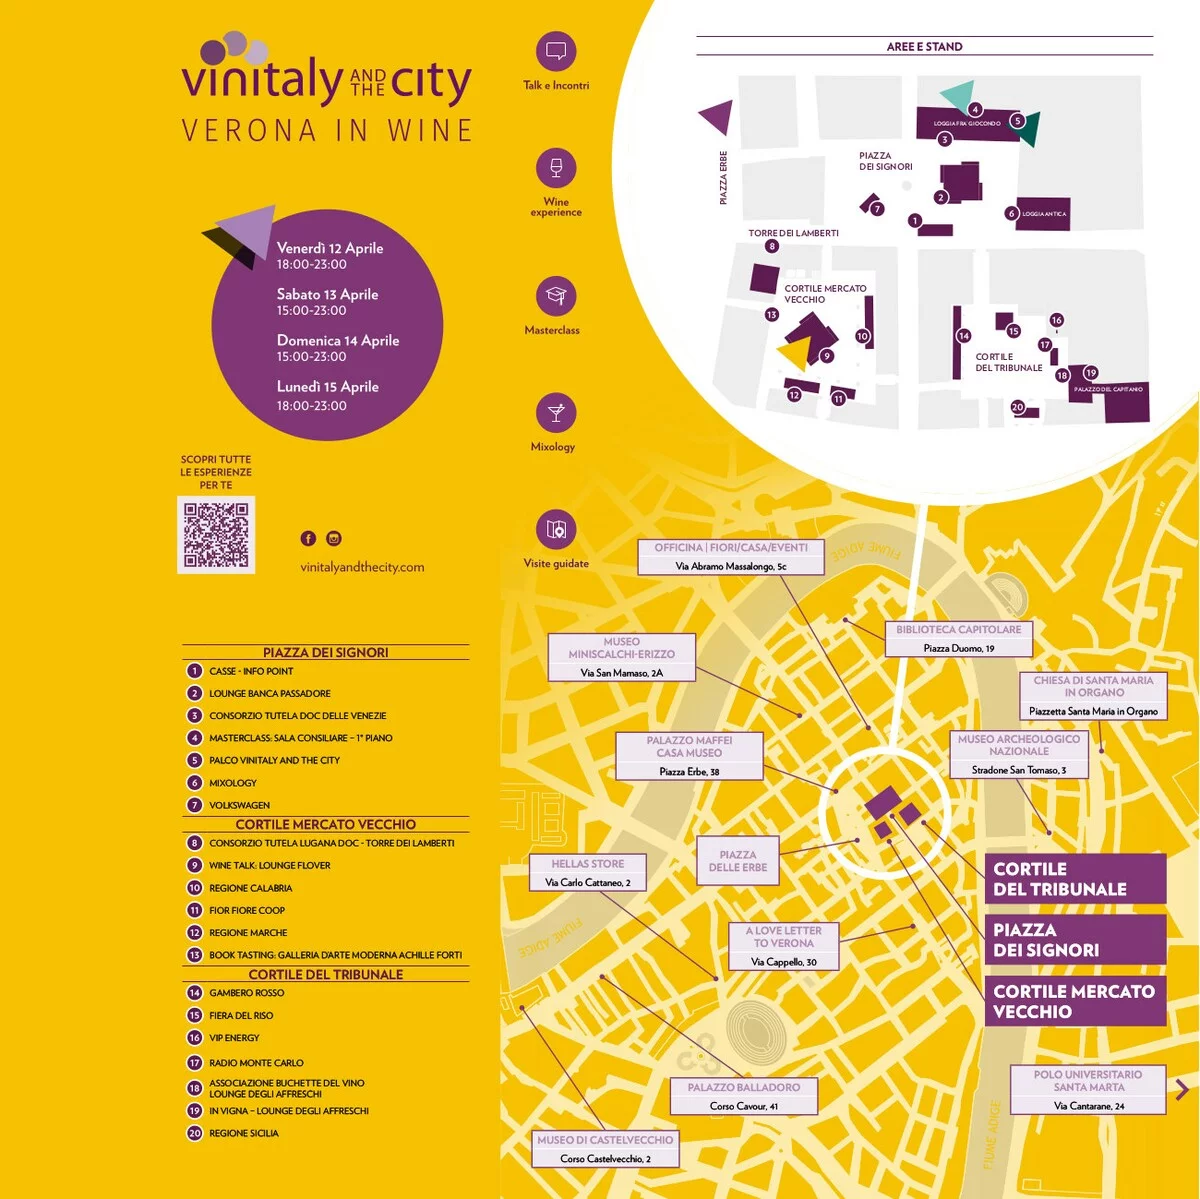 Mappa evento vinitaly and city